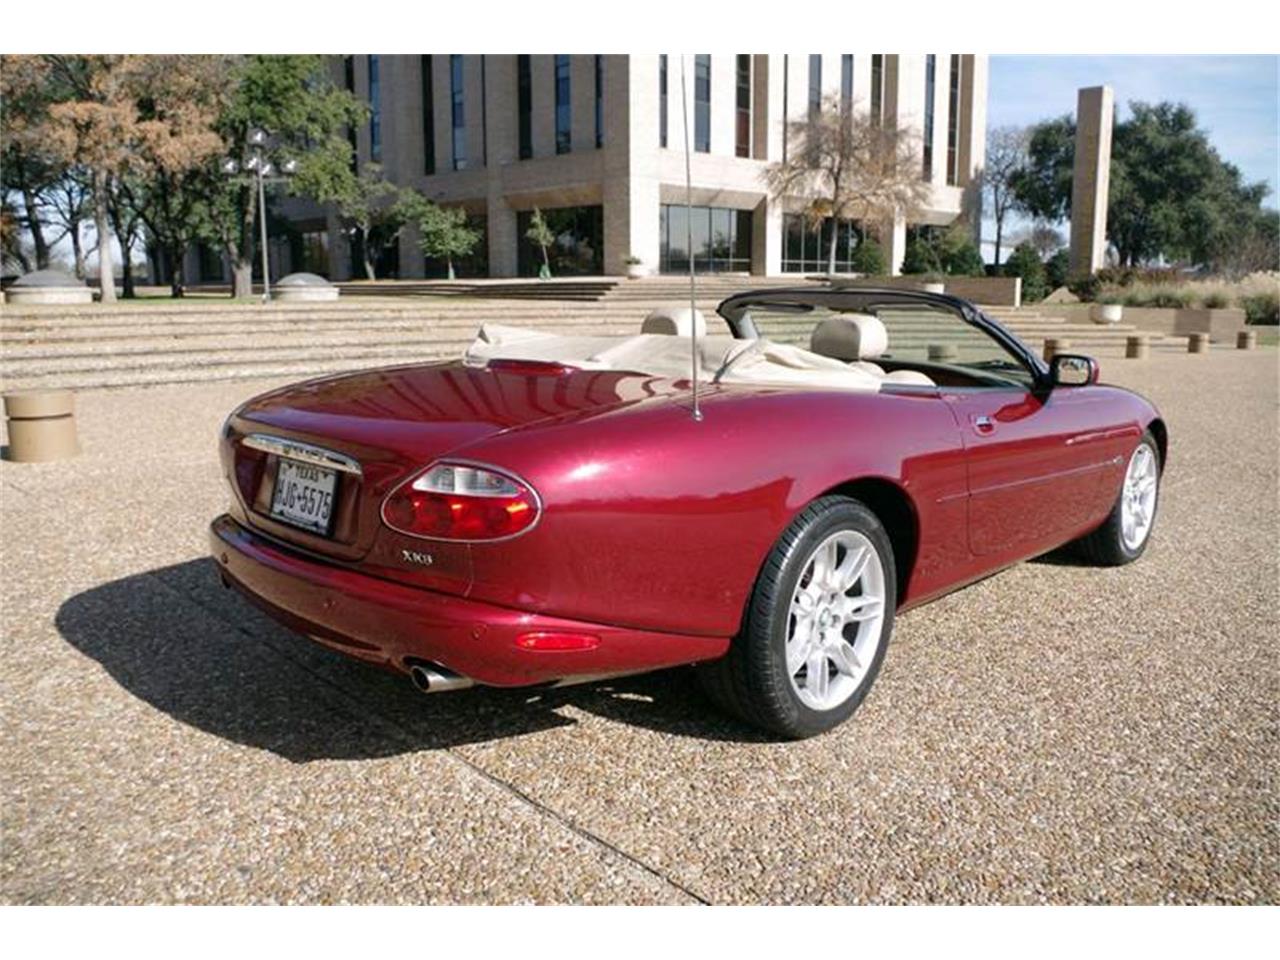 2001 Jaguar XK for Sale | ClassicCars.com | CC-936194